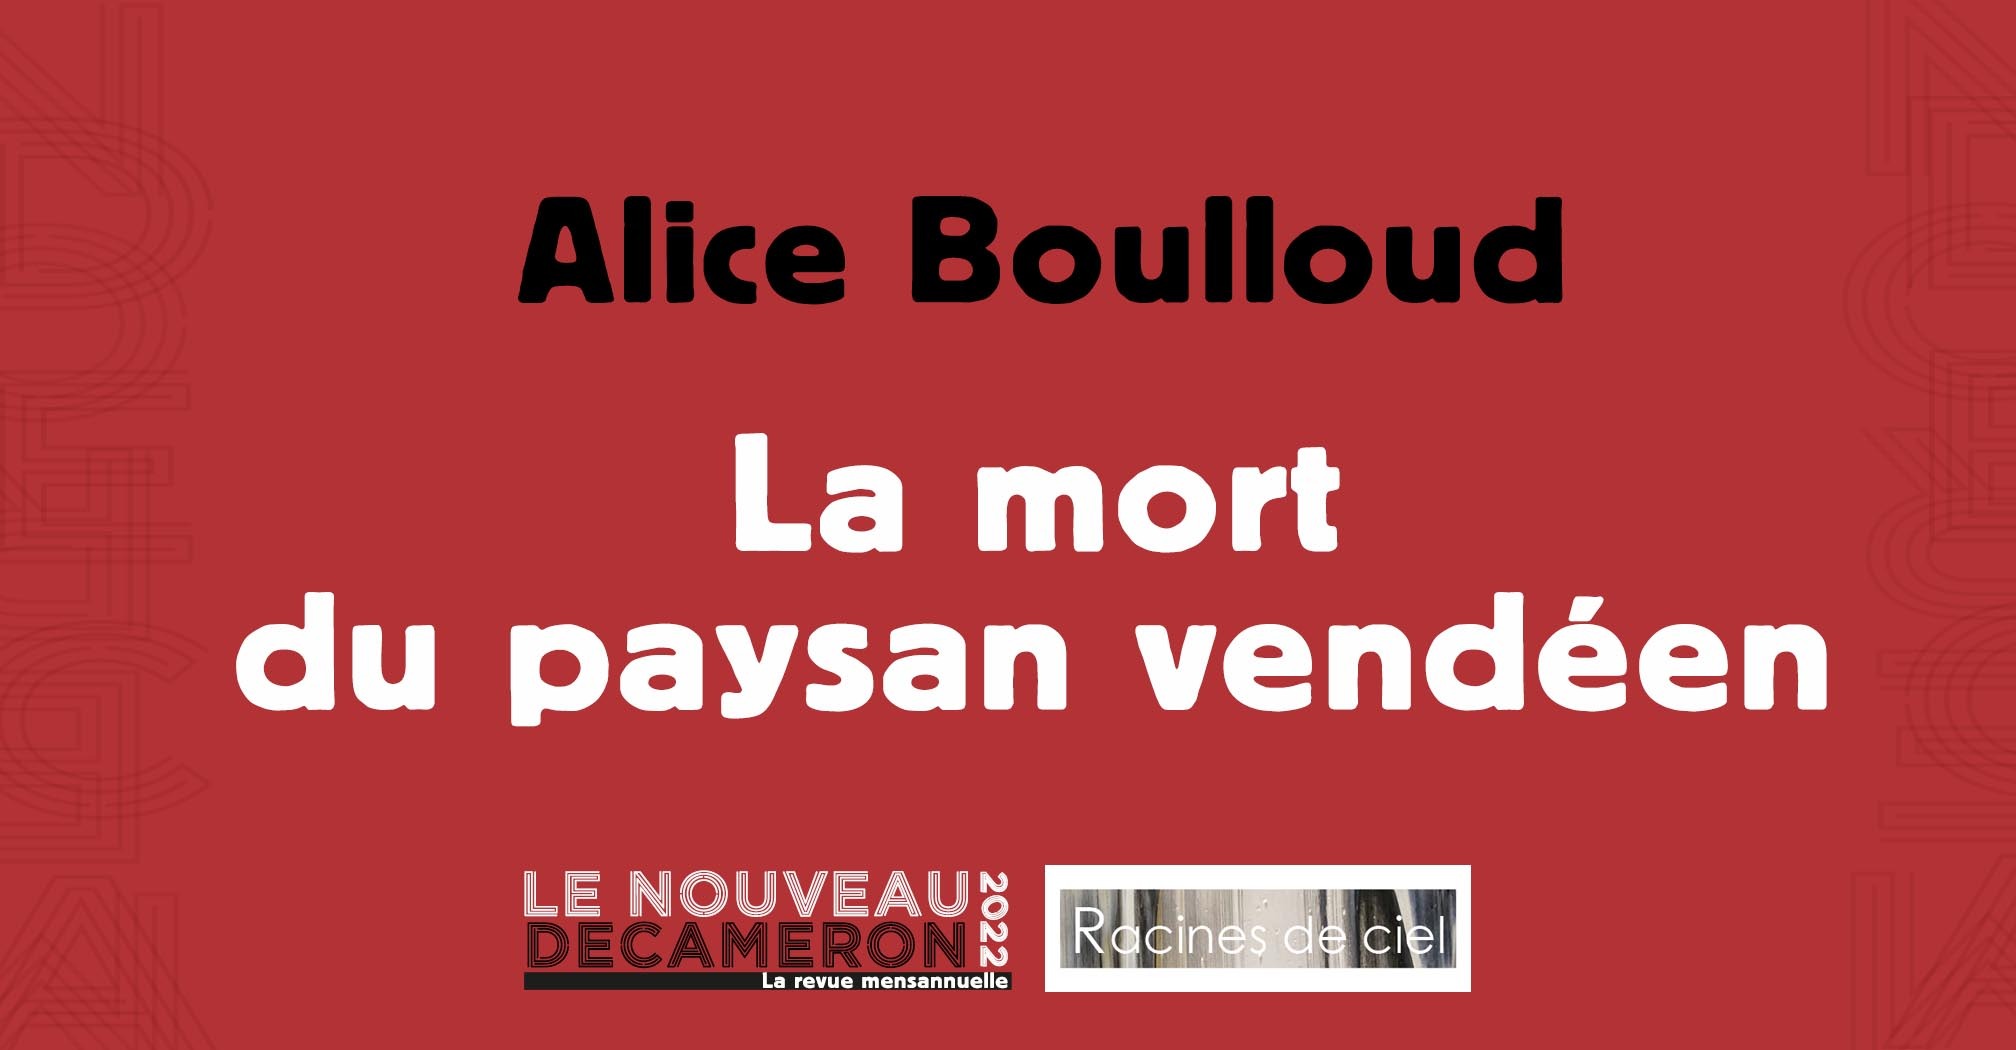 Alice Boulloud - La mort du paysan vendéen